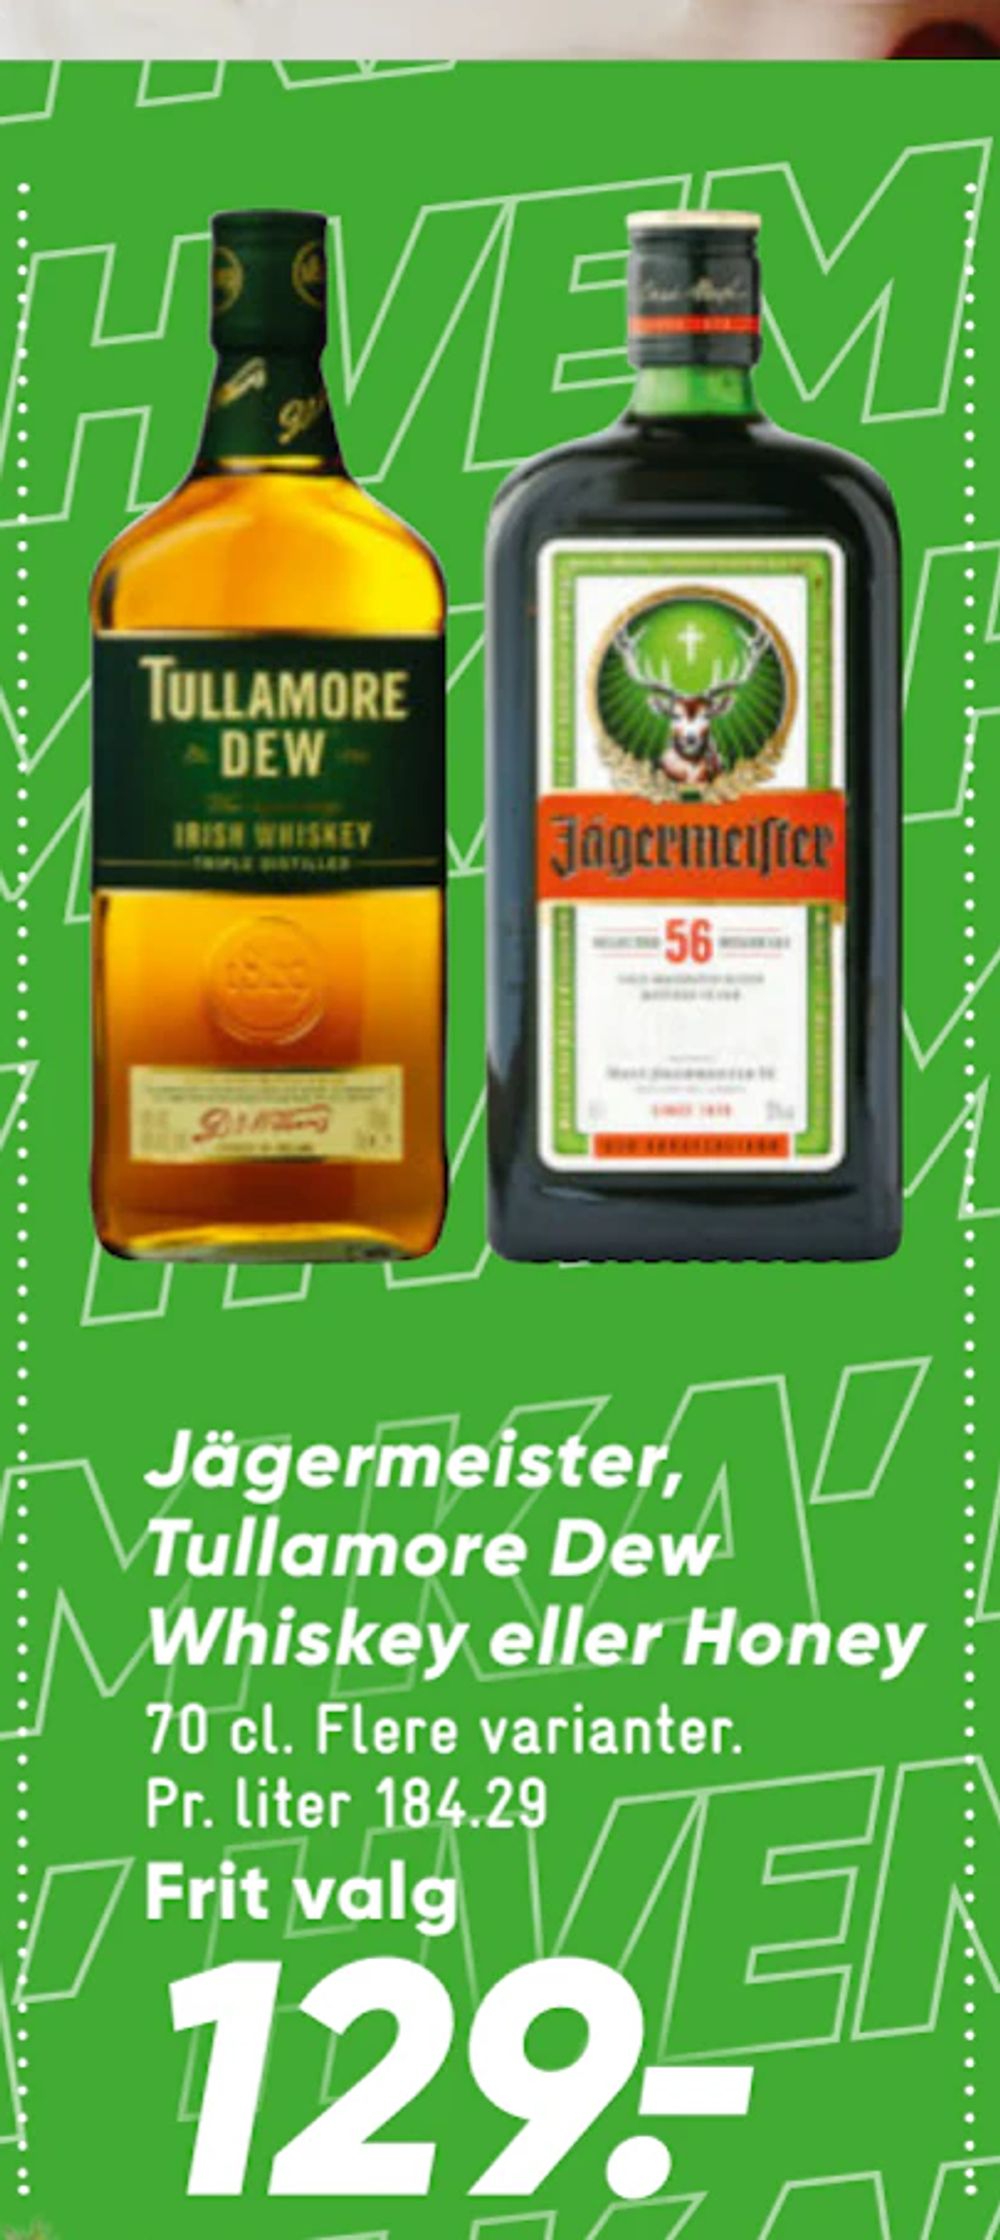 Tilbud på Jägermeister, Tullamore Dew Whiskey eller Honey fra Bilka til 129 kr.